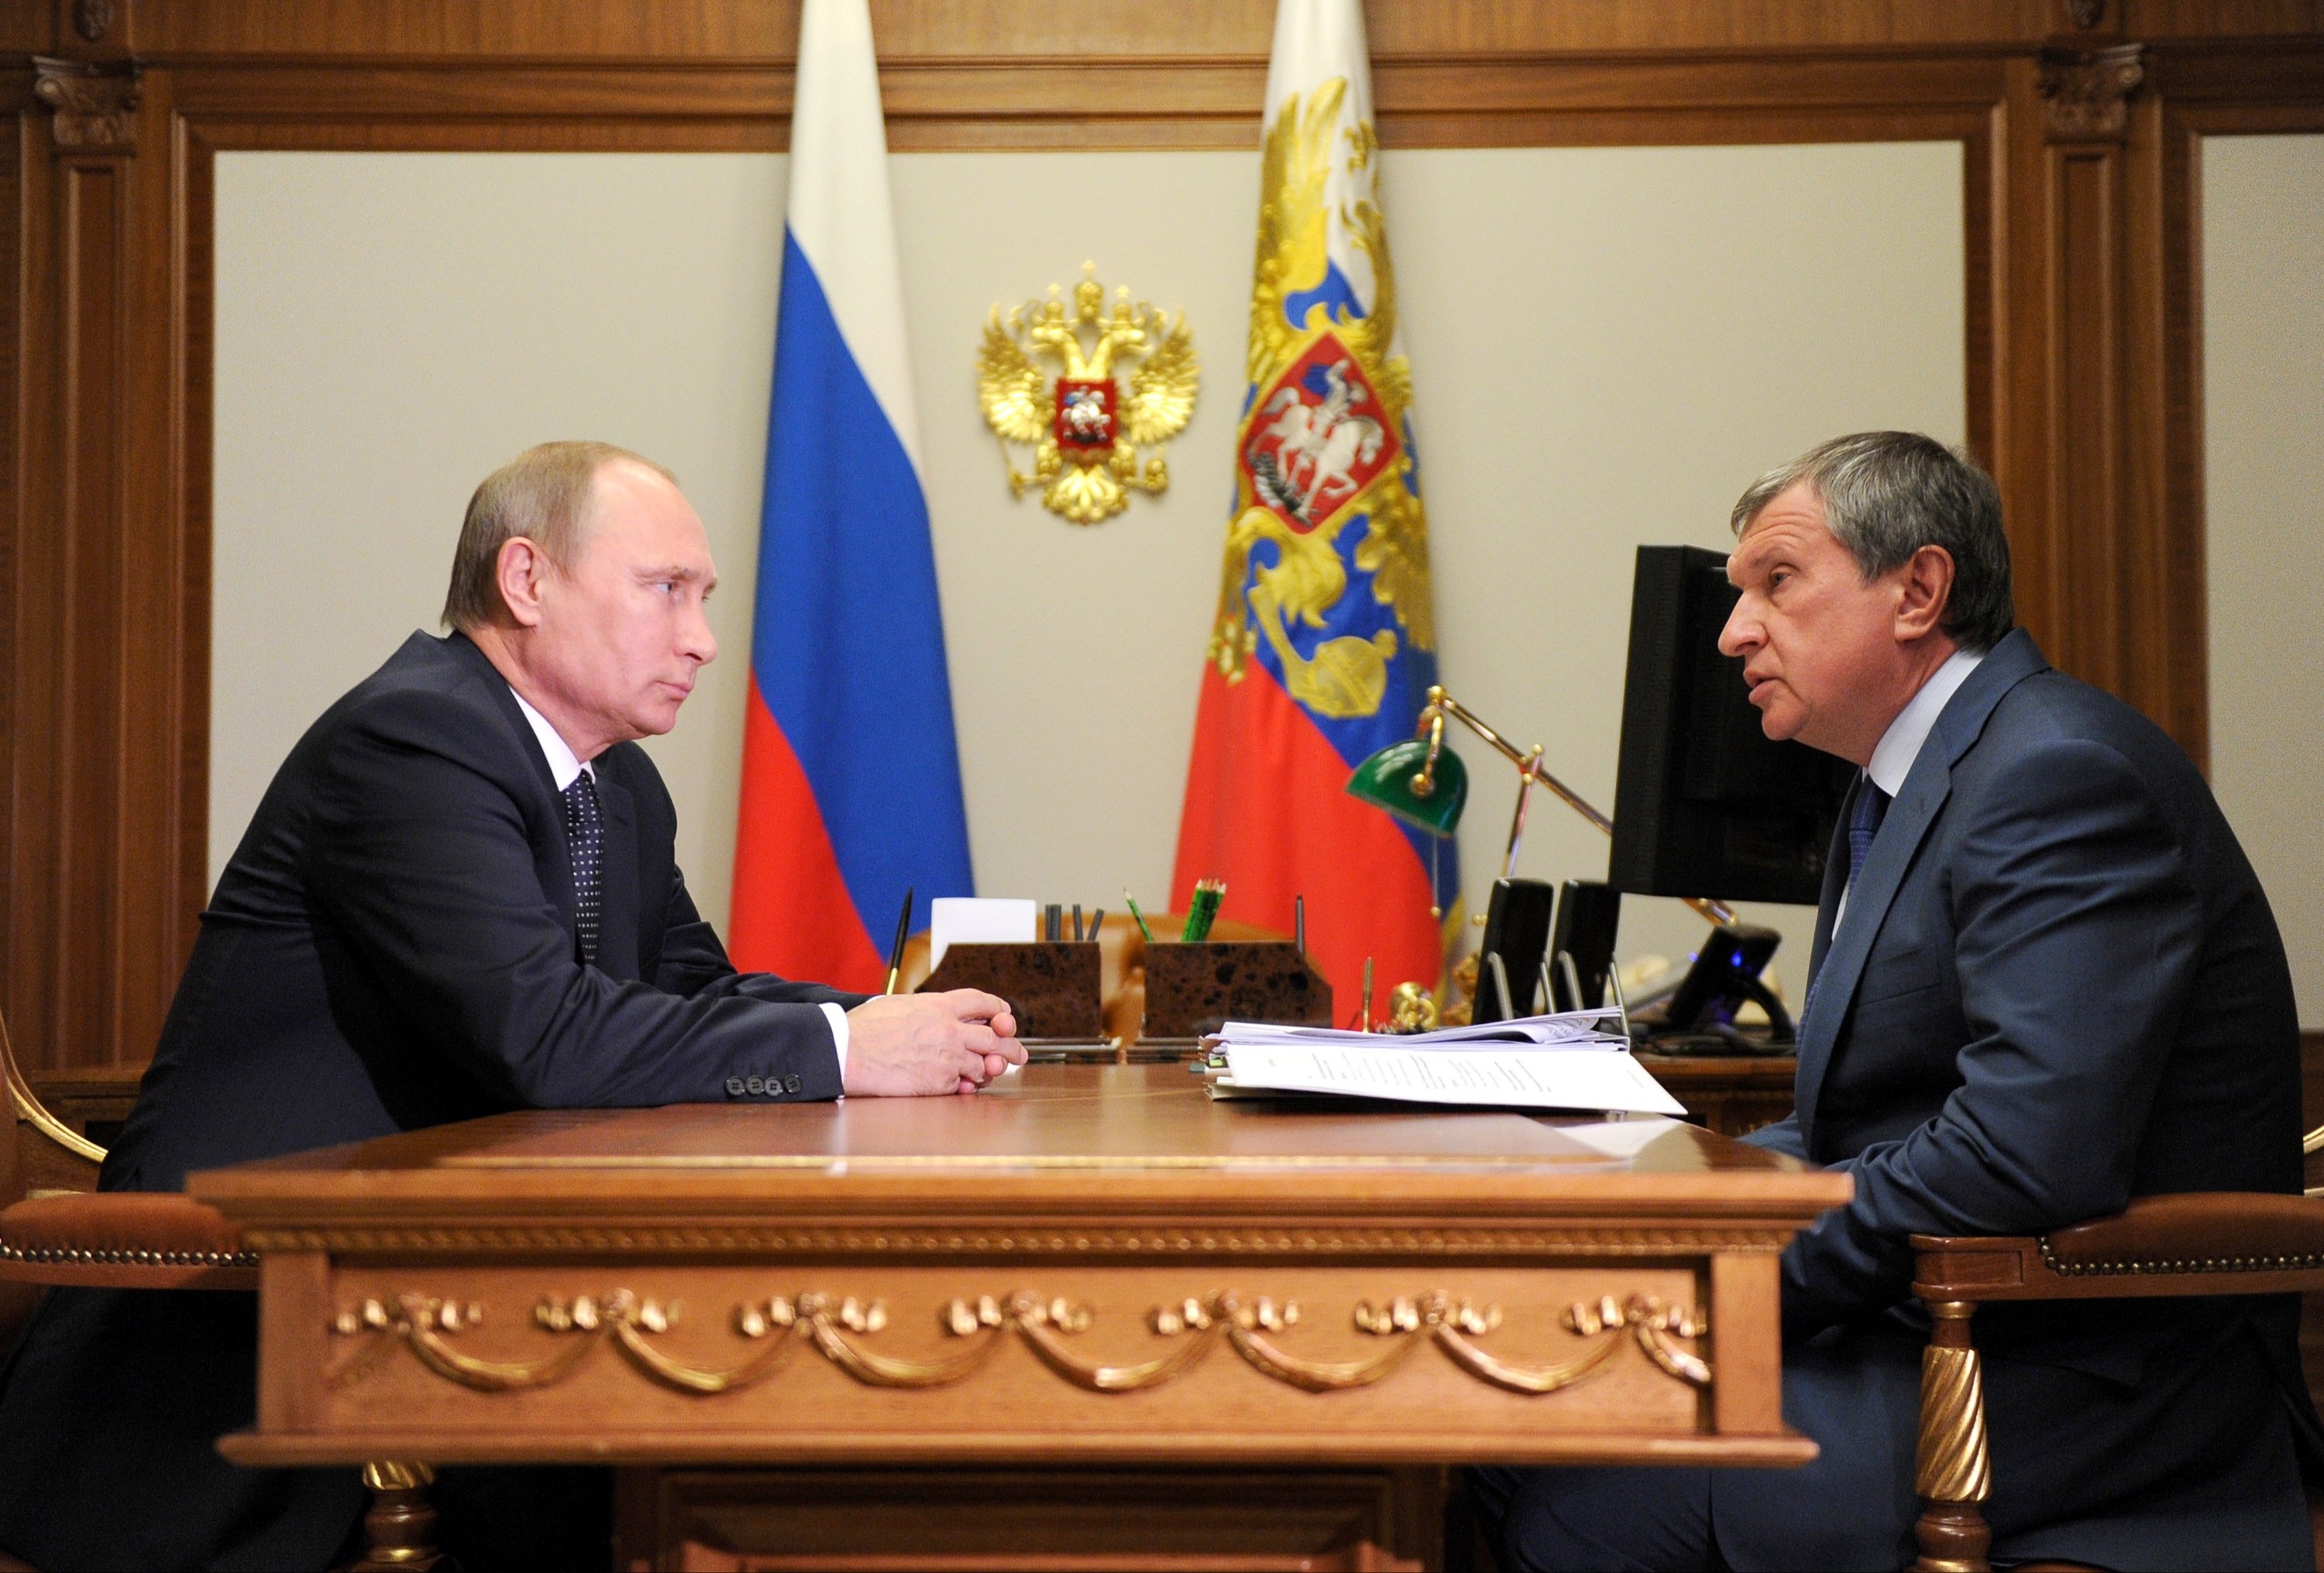 Песков: встреча Путина и Сечина в пятницу будет непубличной